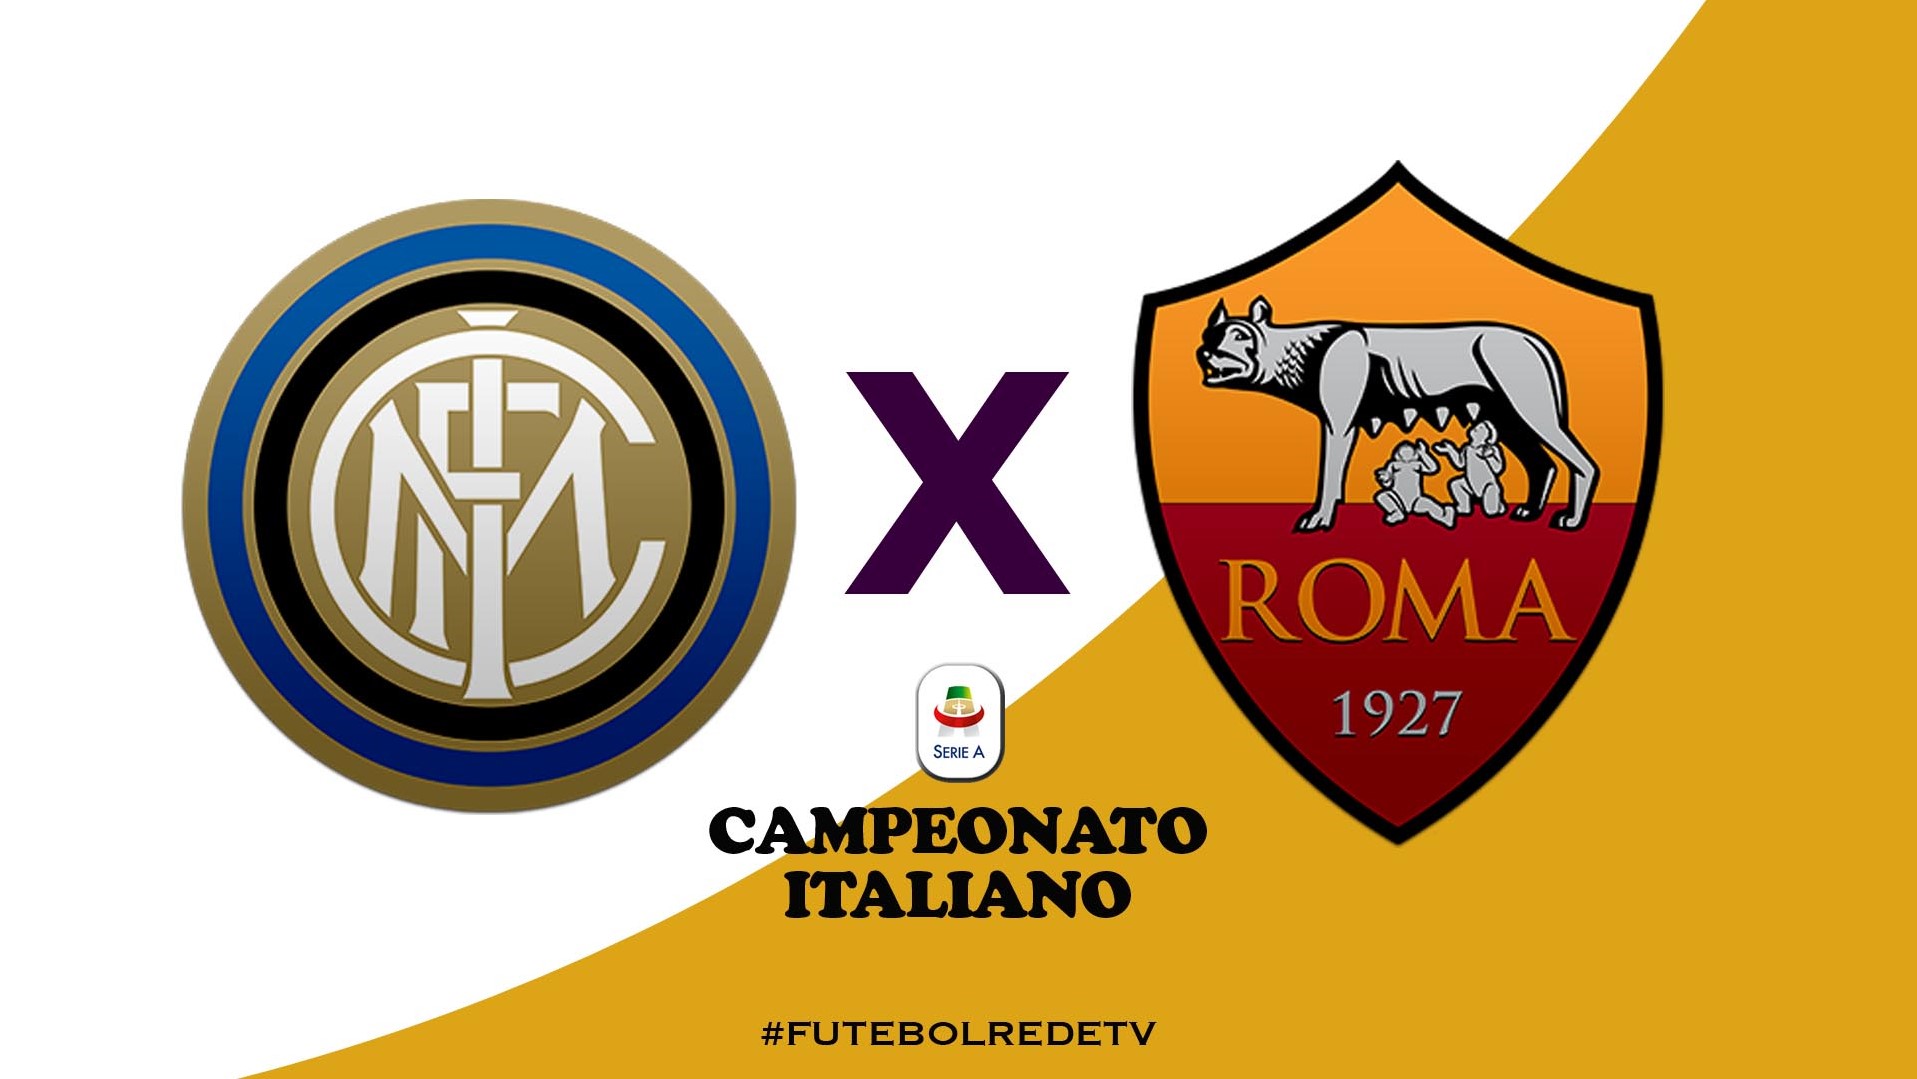 RedeTV! transmite Inter x Roma pelo Campeonato Italiano